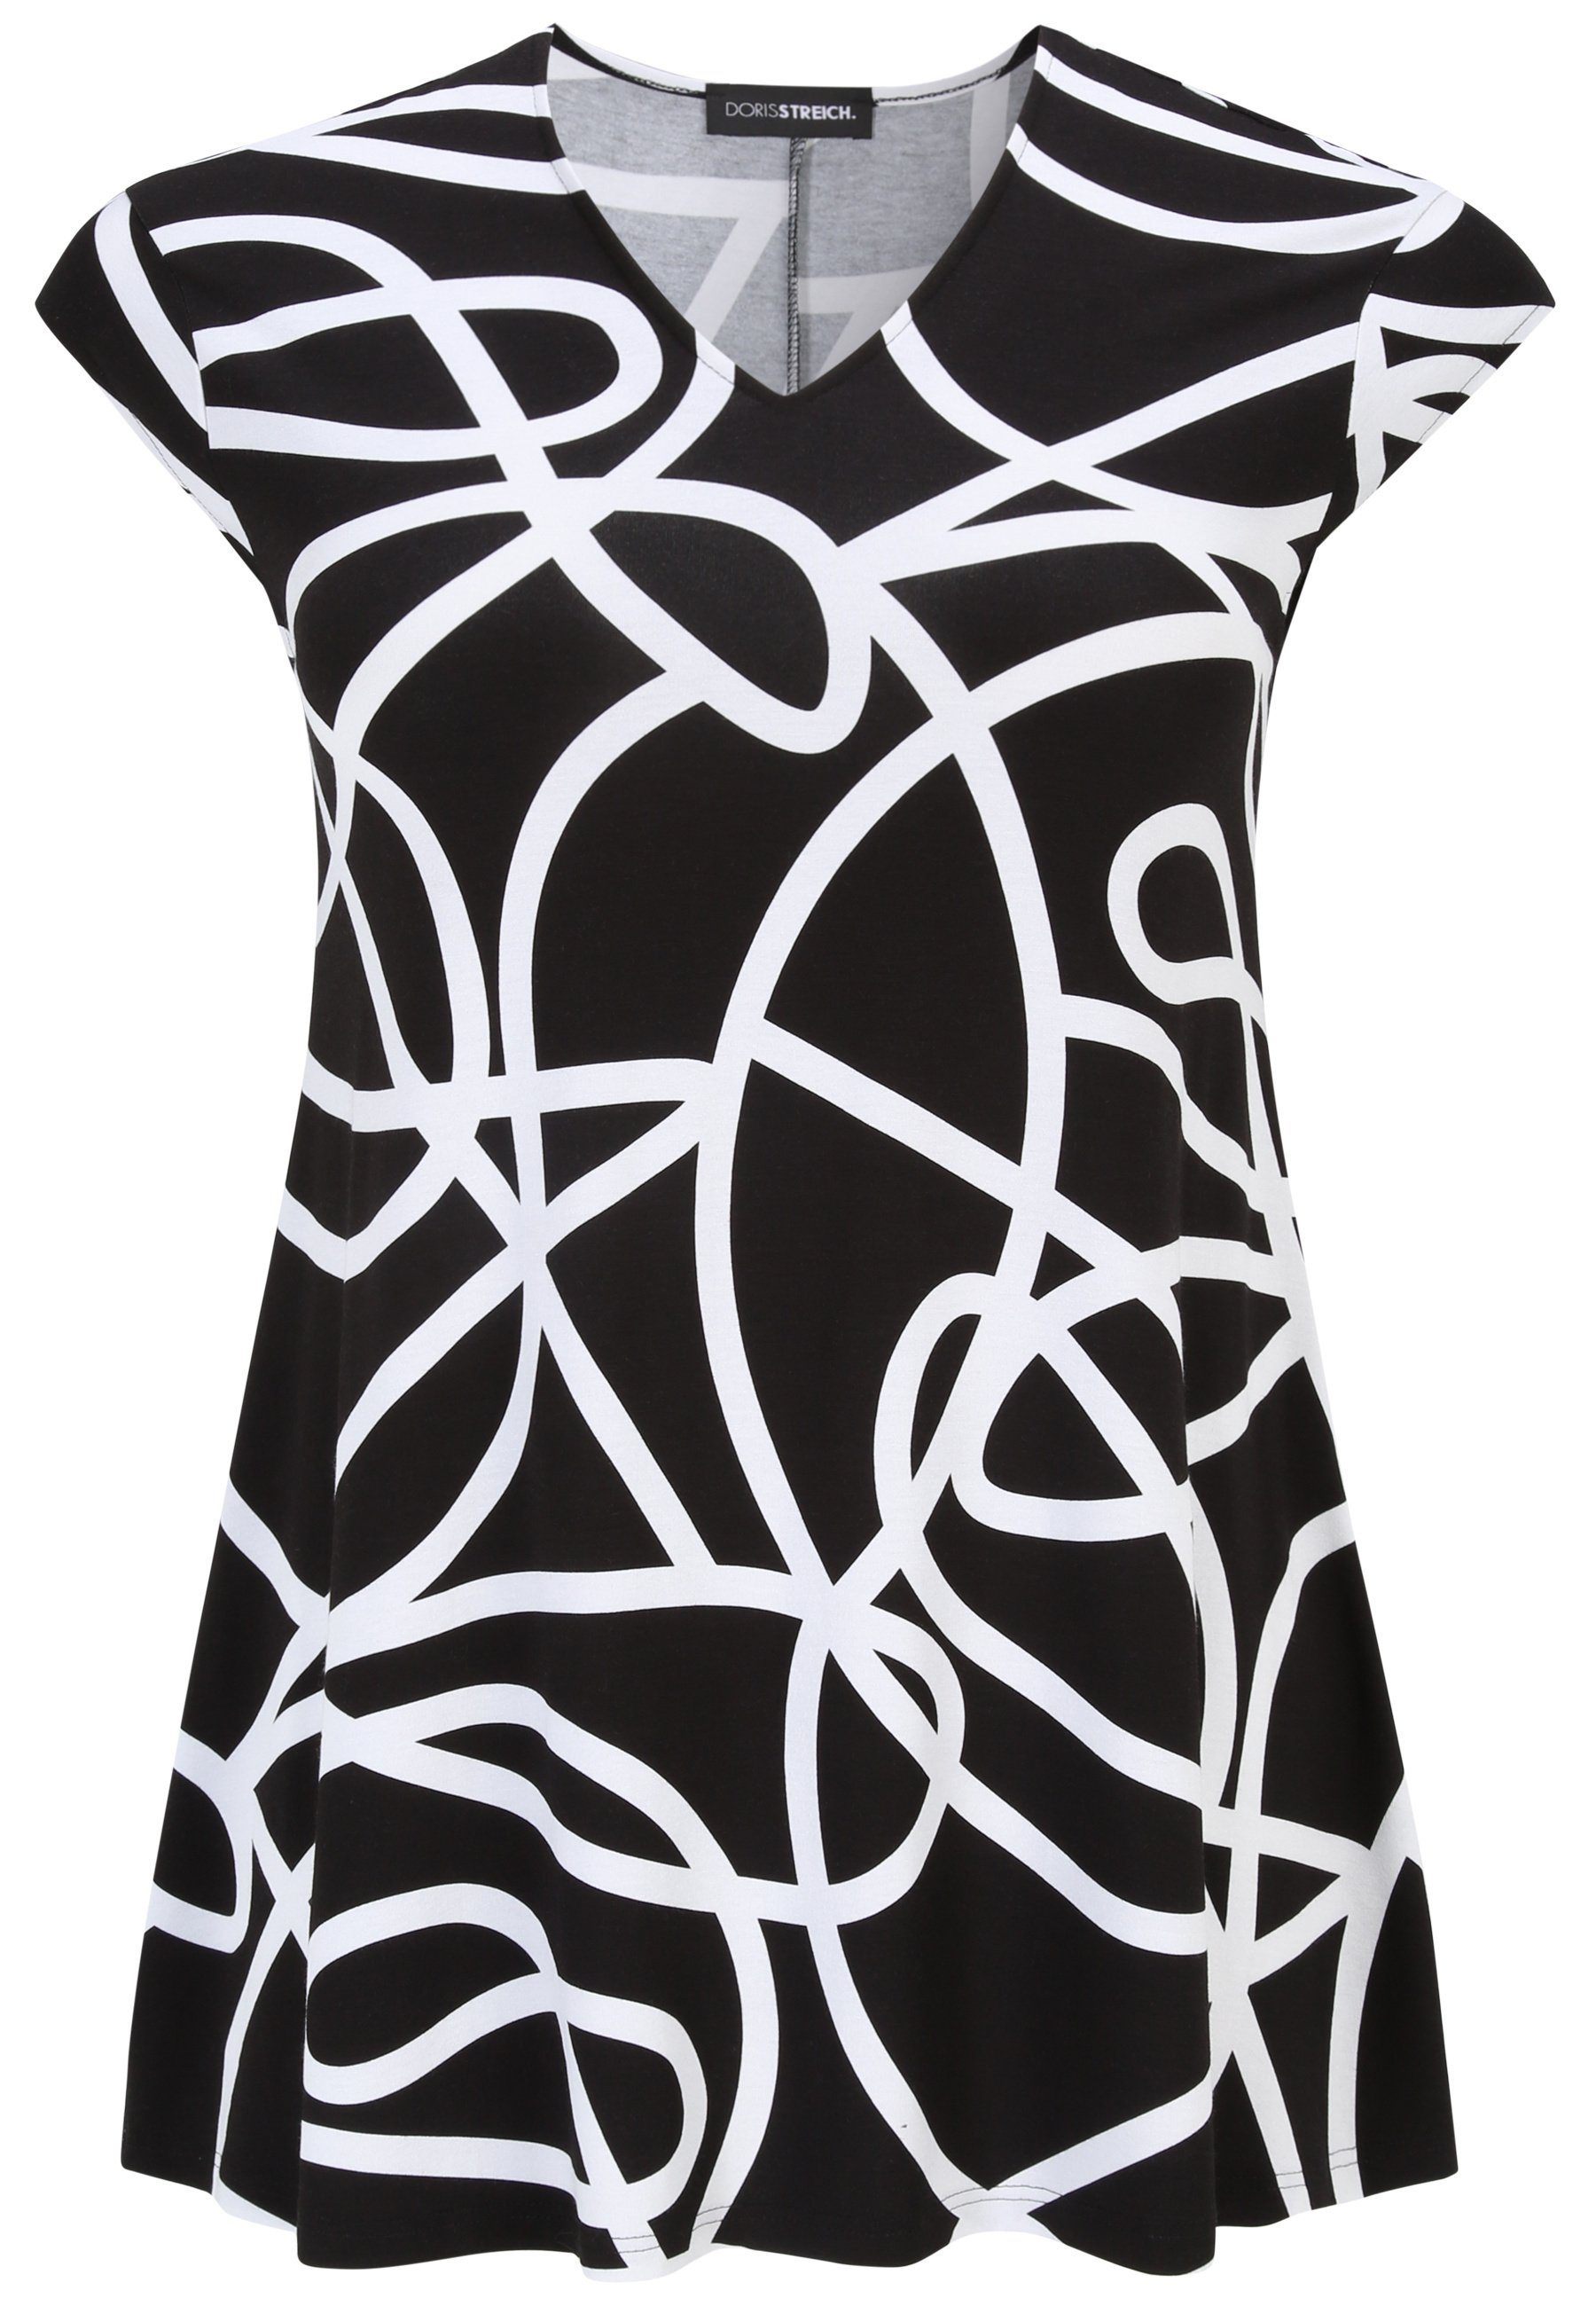 Doris Größe Streich mit mit Long-Shirt modernem wirken Tunika Läßt eine schlanker Grafik-Print Design, Sie